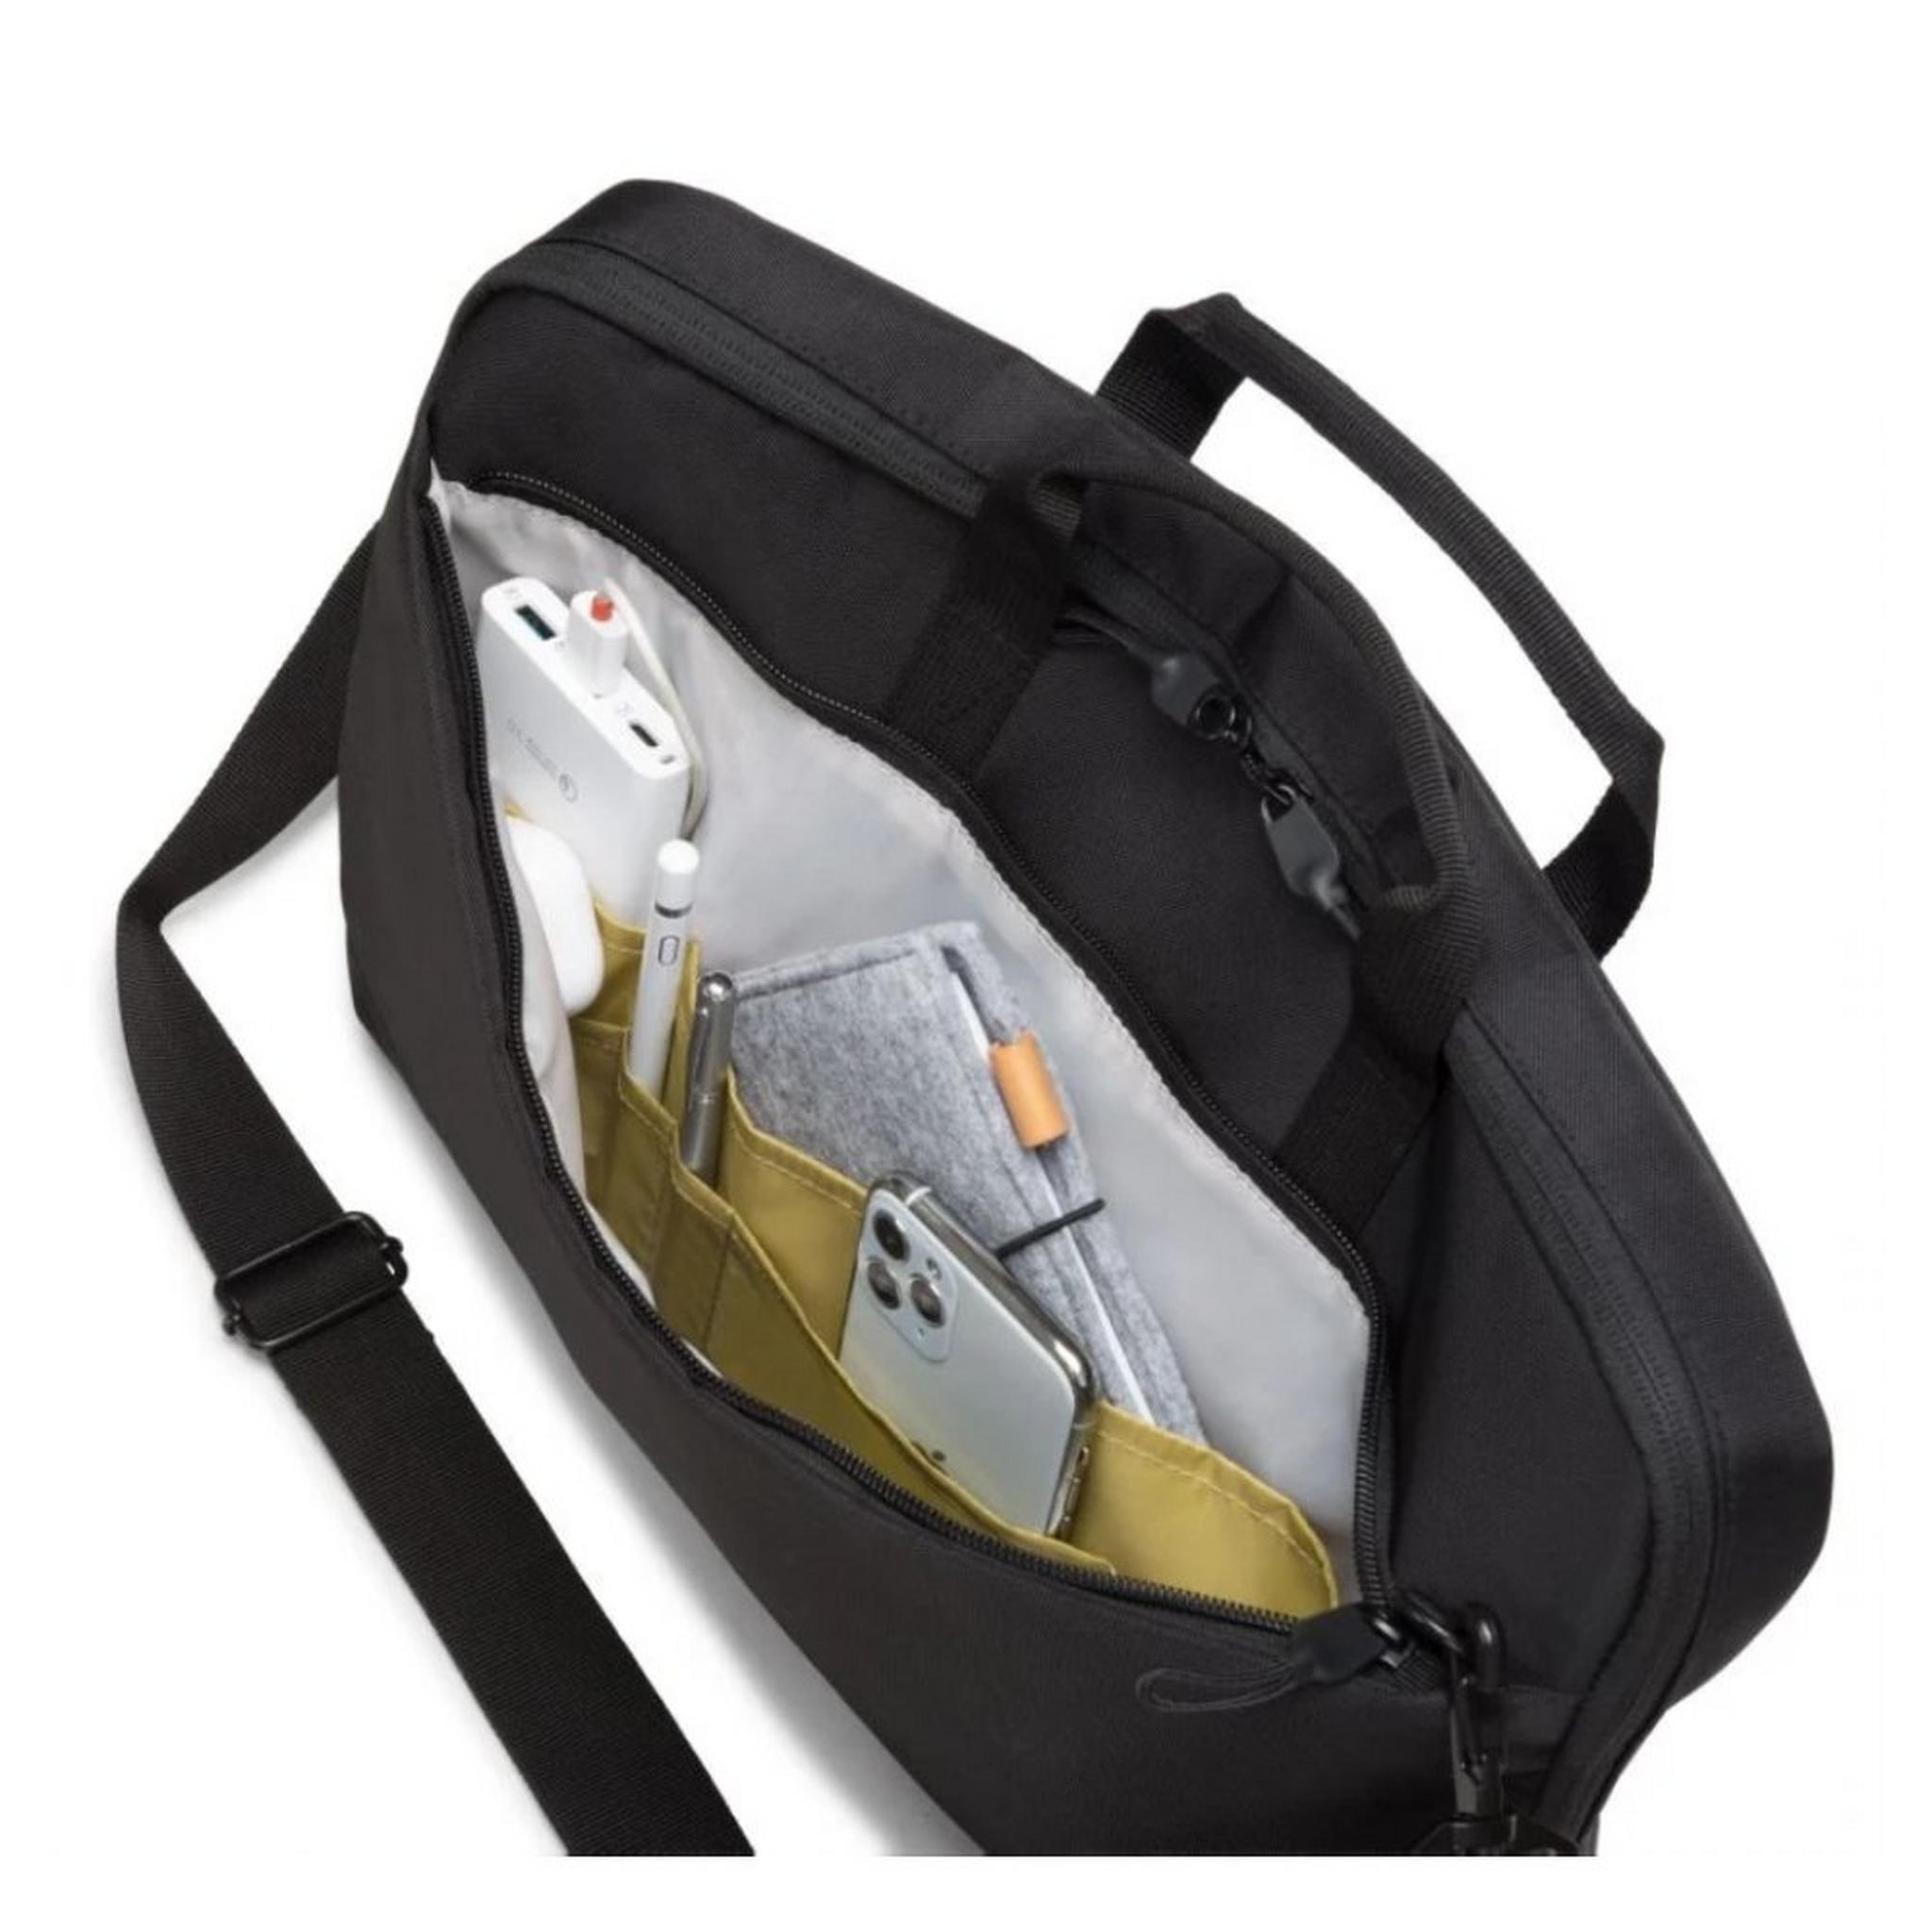 حقيبة ايكو سليم موشن للابتوب بحجم 13.3 بوصة من ديكوتا - أسود